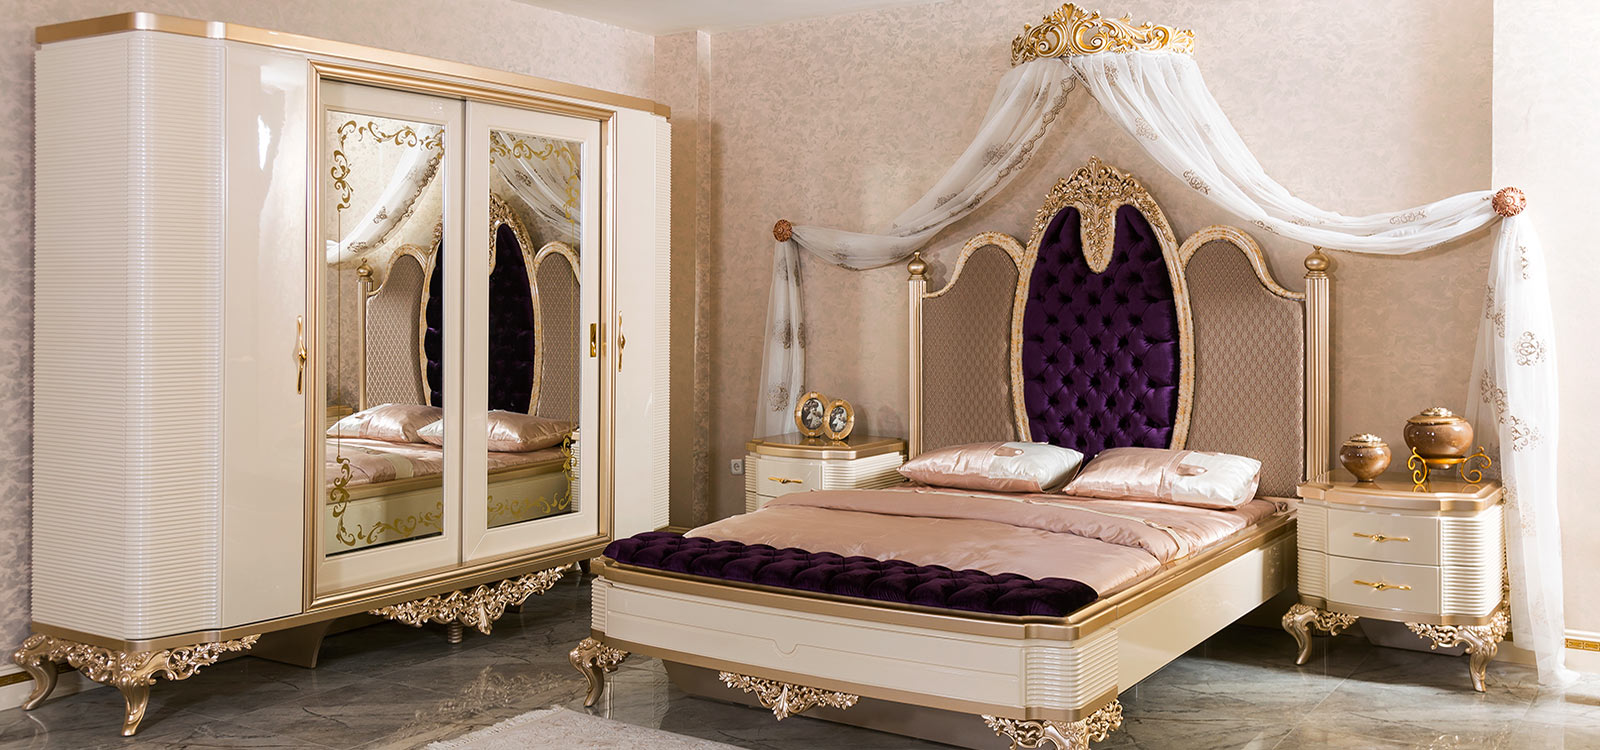 اثاث غرف النوم التركي الكلاسيكي